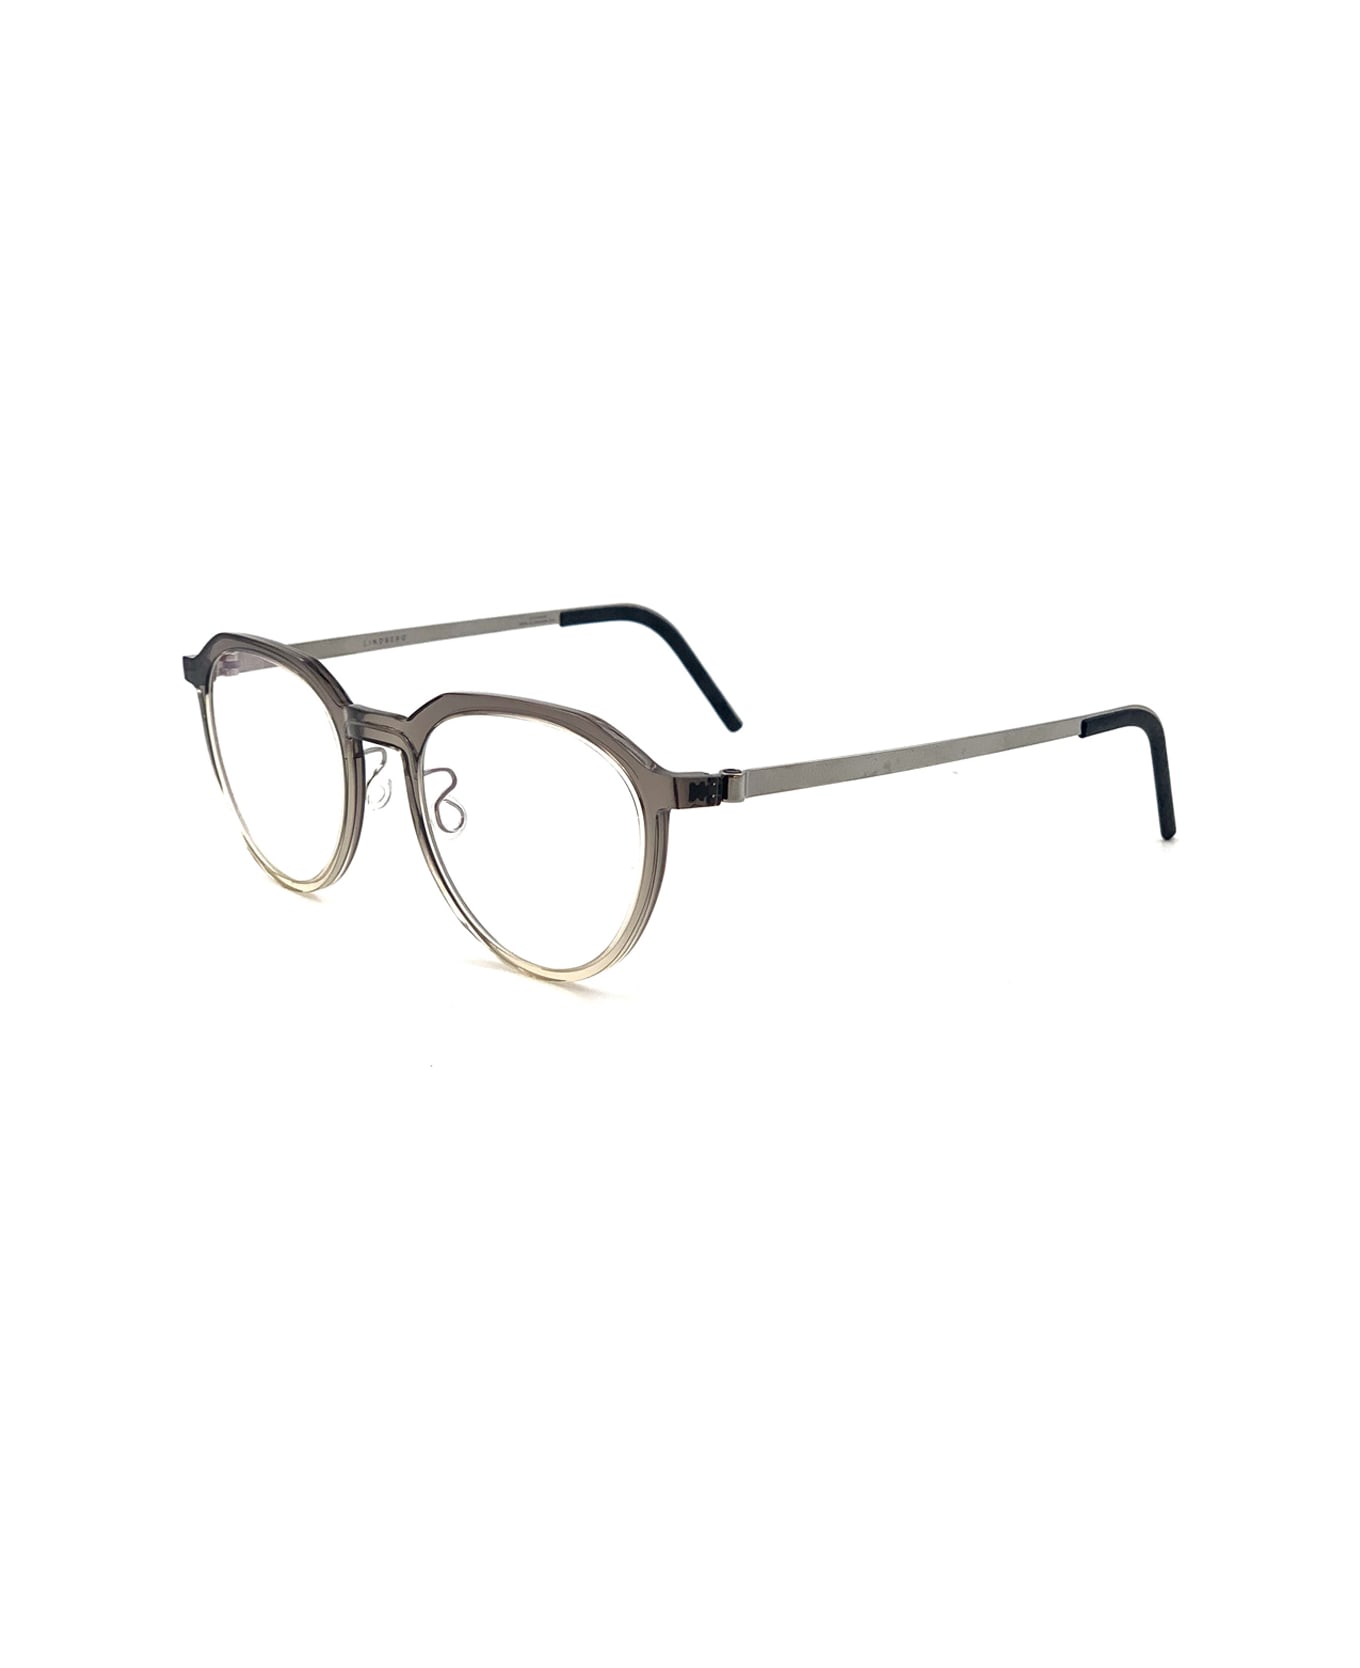 LINDBERG Acetanium 1046 Ai32/k265 P10 Glasses - Grigio